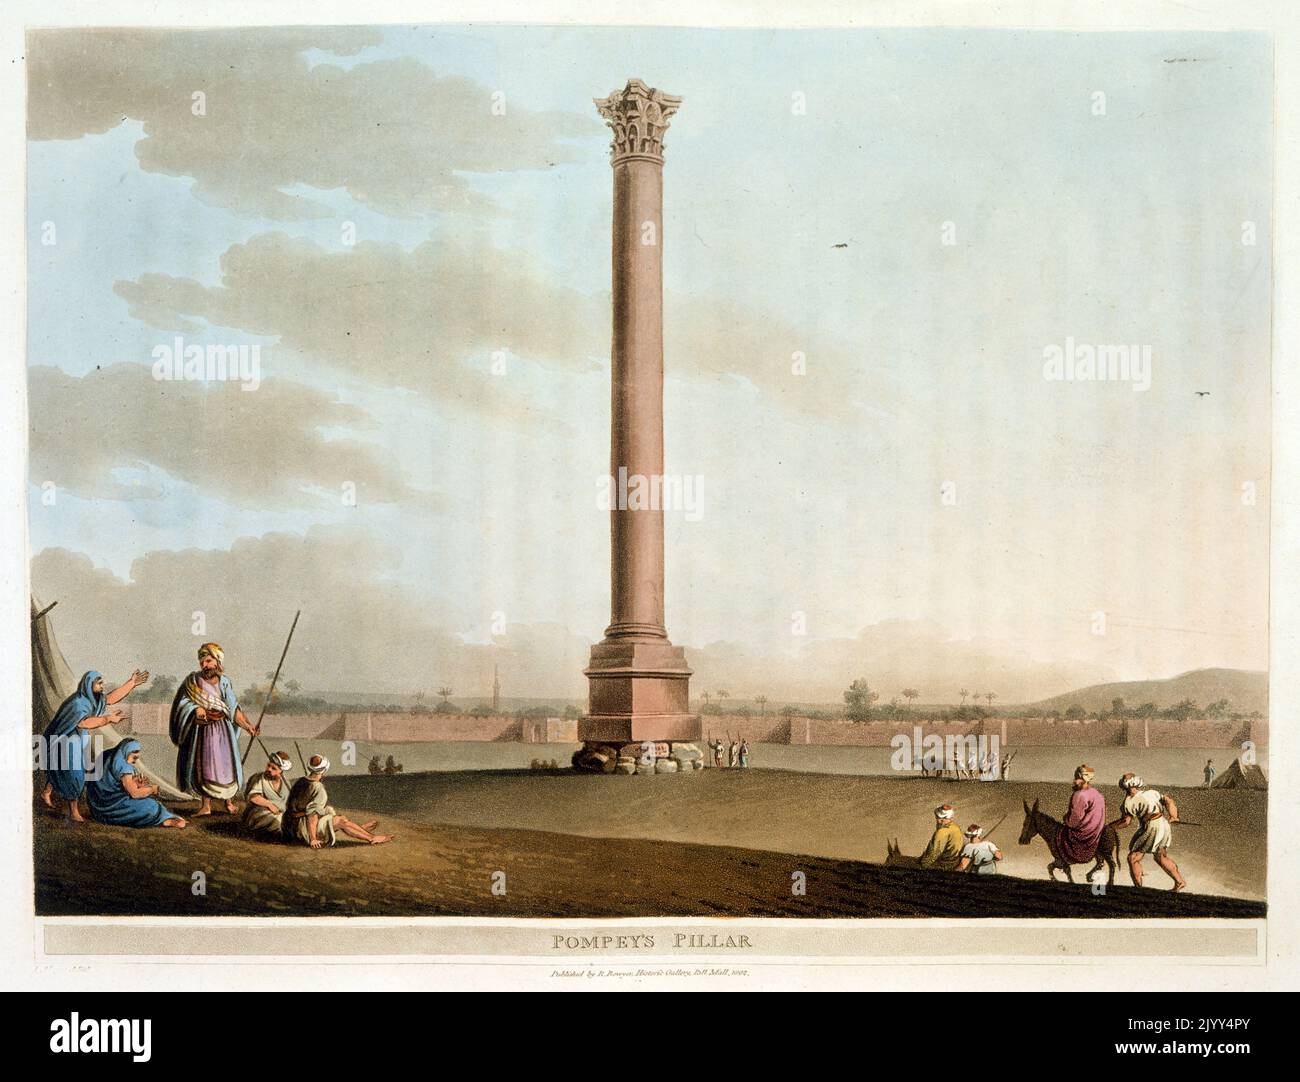 Le pilier de Pompey en Égypte. 1801 aquarelle de Luigi Mayer (1755-1803), artiste italien-allemand et l'un des plus anciens et des plus importants peintres européens de l'Empire ottoman datant de la fin du 18th siècle Banque D'Images